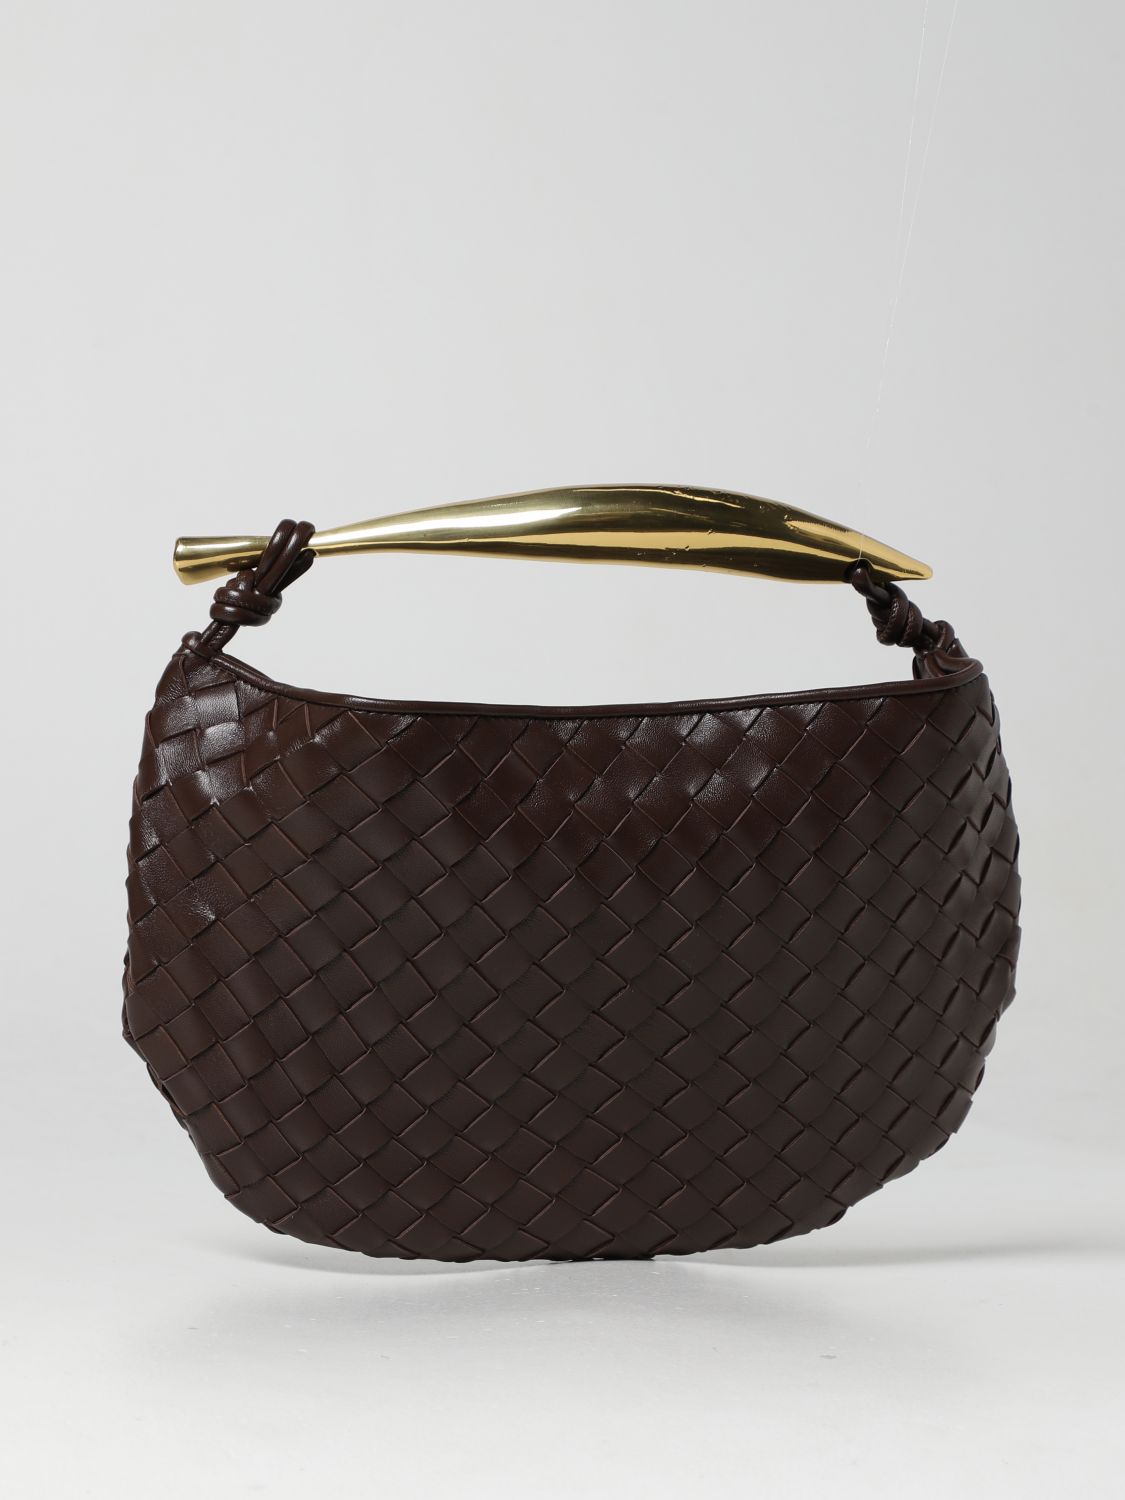 Sardine Leather Tote Bag in Brown - Bottega Veneta